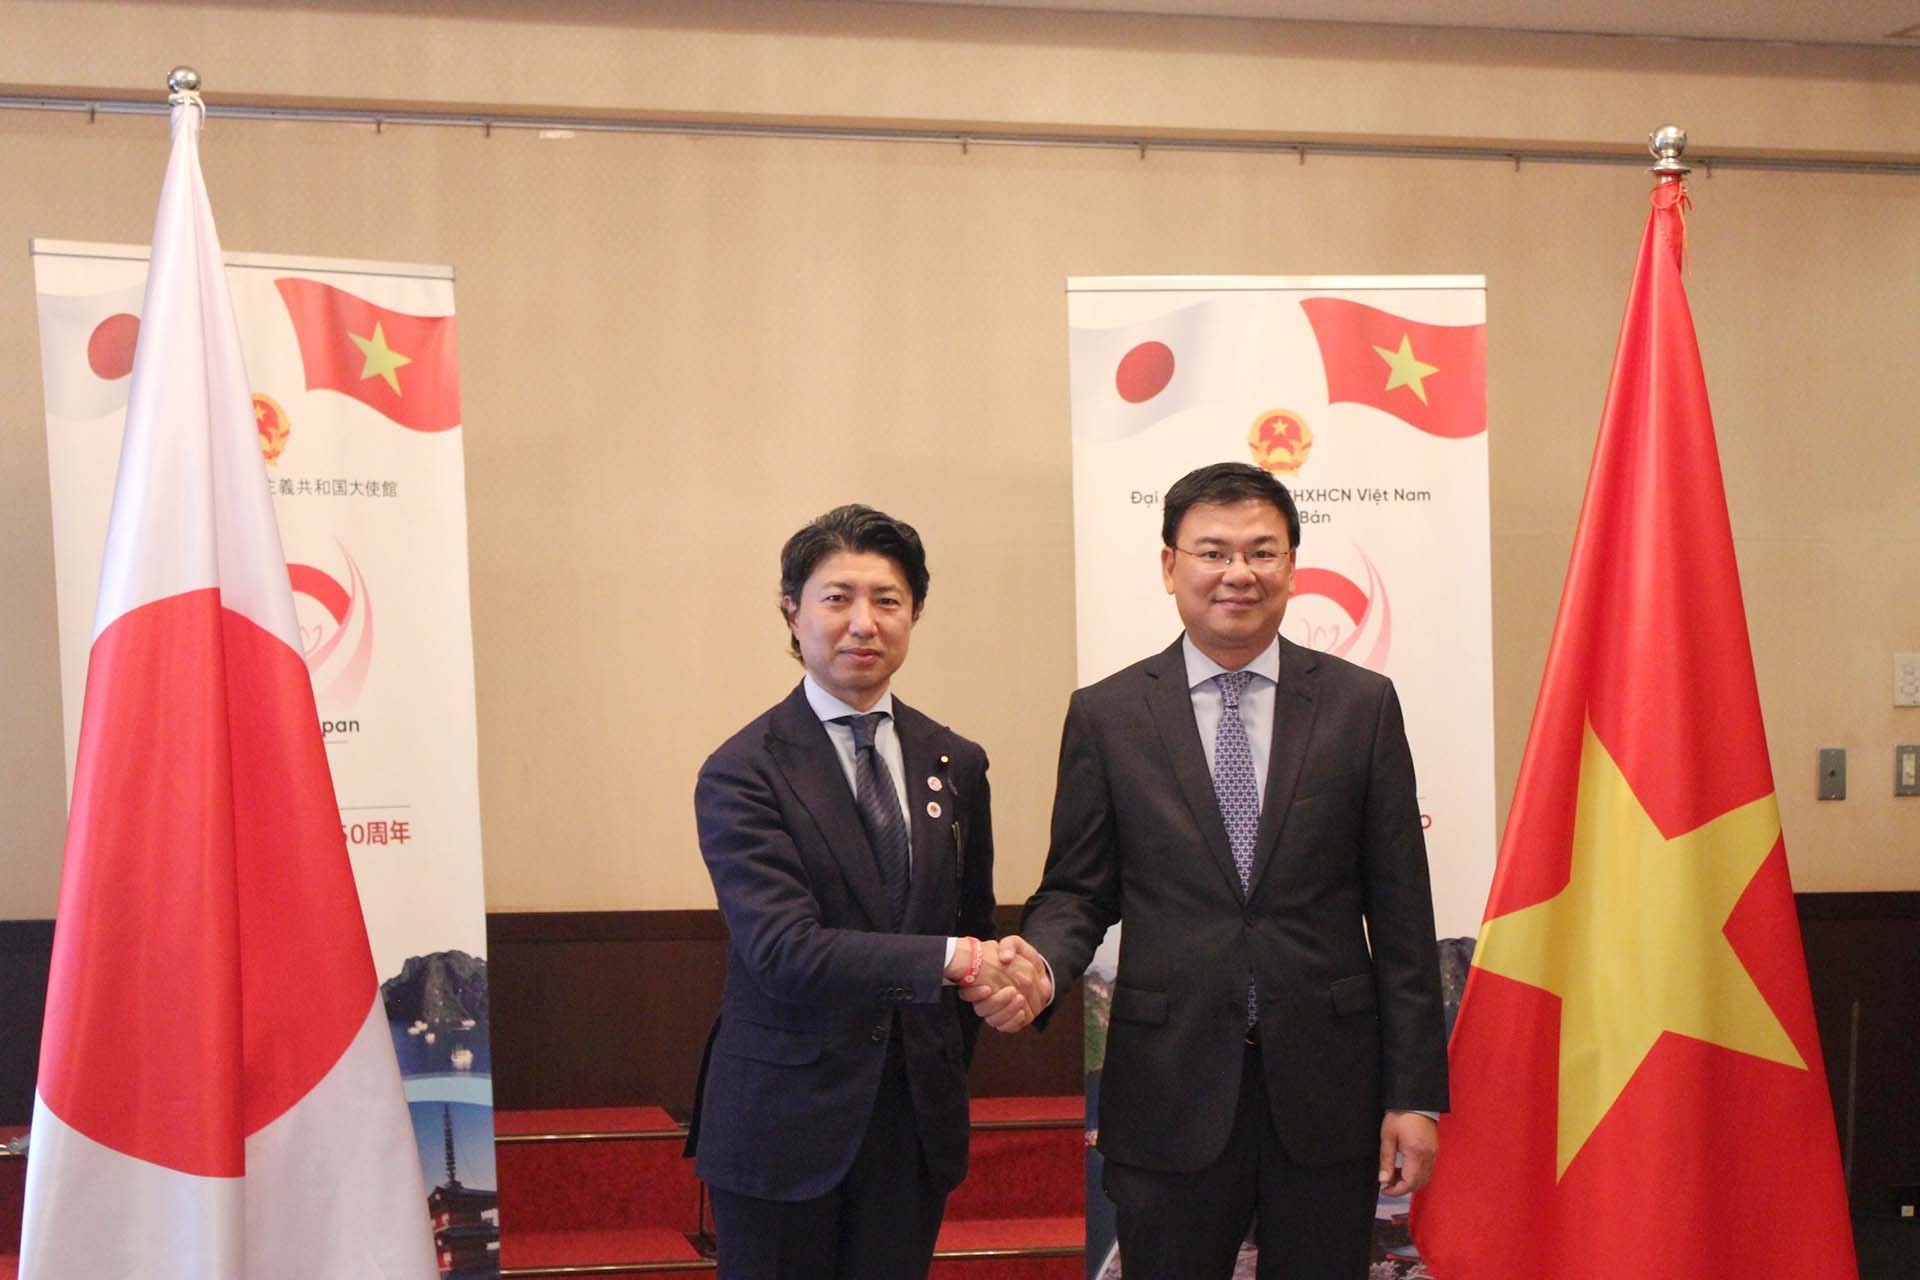 Đại sứ Phạm Quang Hiệu và Hạ nghị sỹ Yoichiro Aoyagi trong họp báo giới thiệu về Lễ hội Việt Nam tại Nhật Bản. (Nguồn: TTXVN)